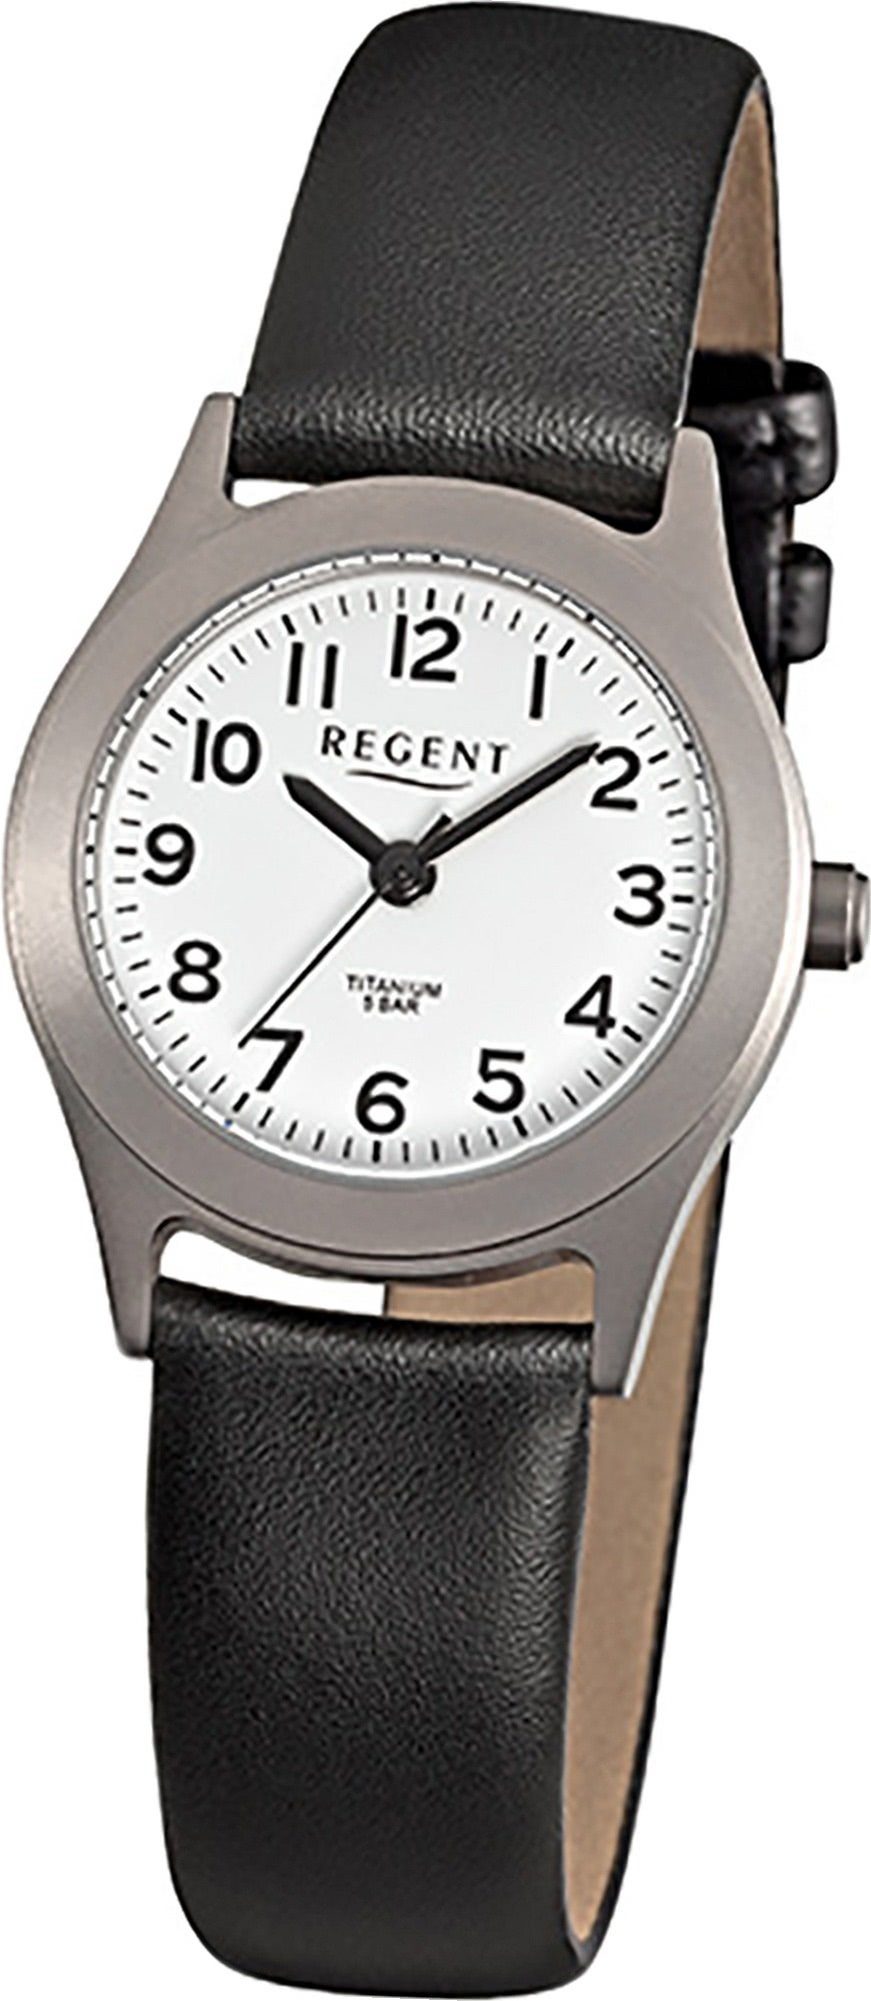 Regent Quarzuhr Regent Leder Damen Uhr F-871 Quarzuhr, Damenuhr rund, klein  (ca. 26mm), Titan, Lederarmband, Elegant-Style